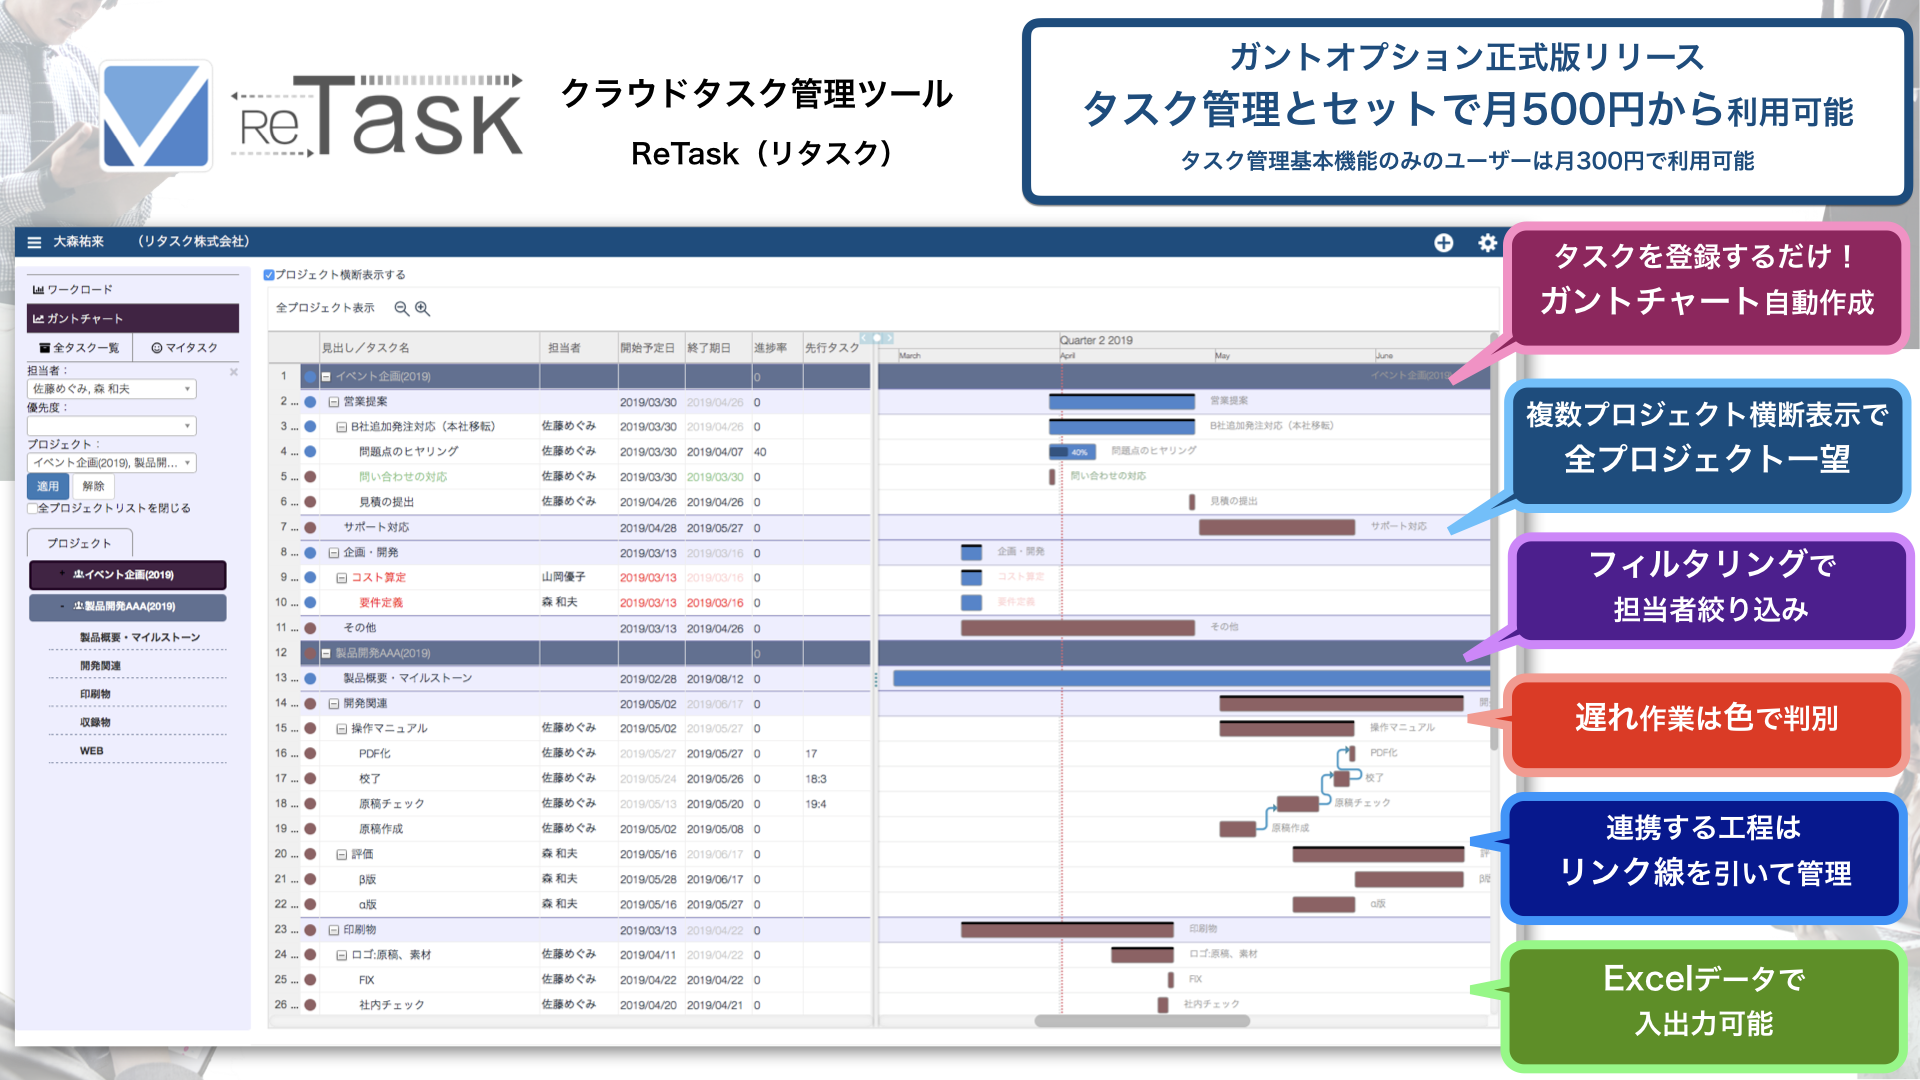 クラウドタスク管理ツール Retask に ガントチャート 機能を正式搭載 個人 チーム 全社 を同時に見渡すことが可能に 株式会社メディアナビのプレスリリース